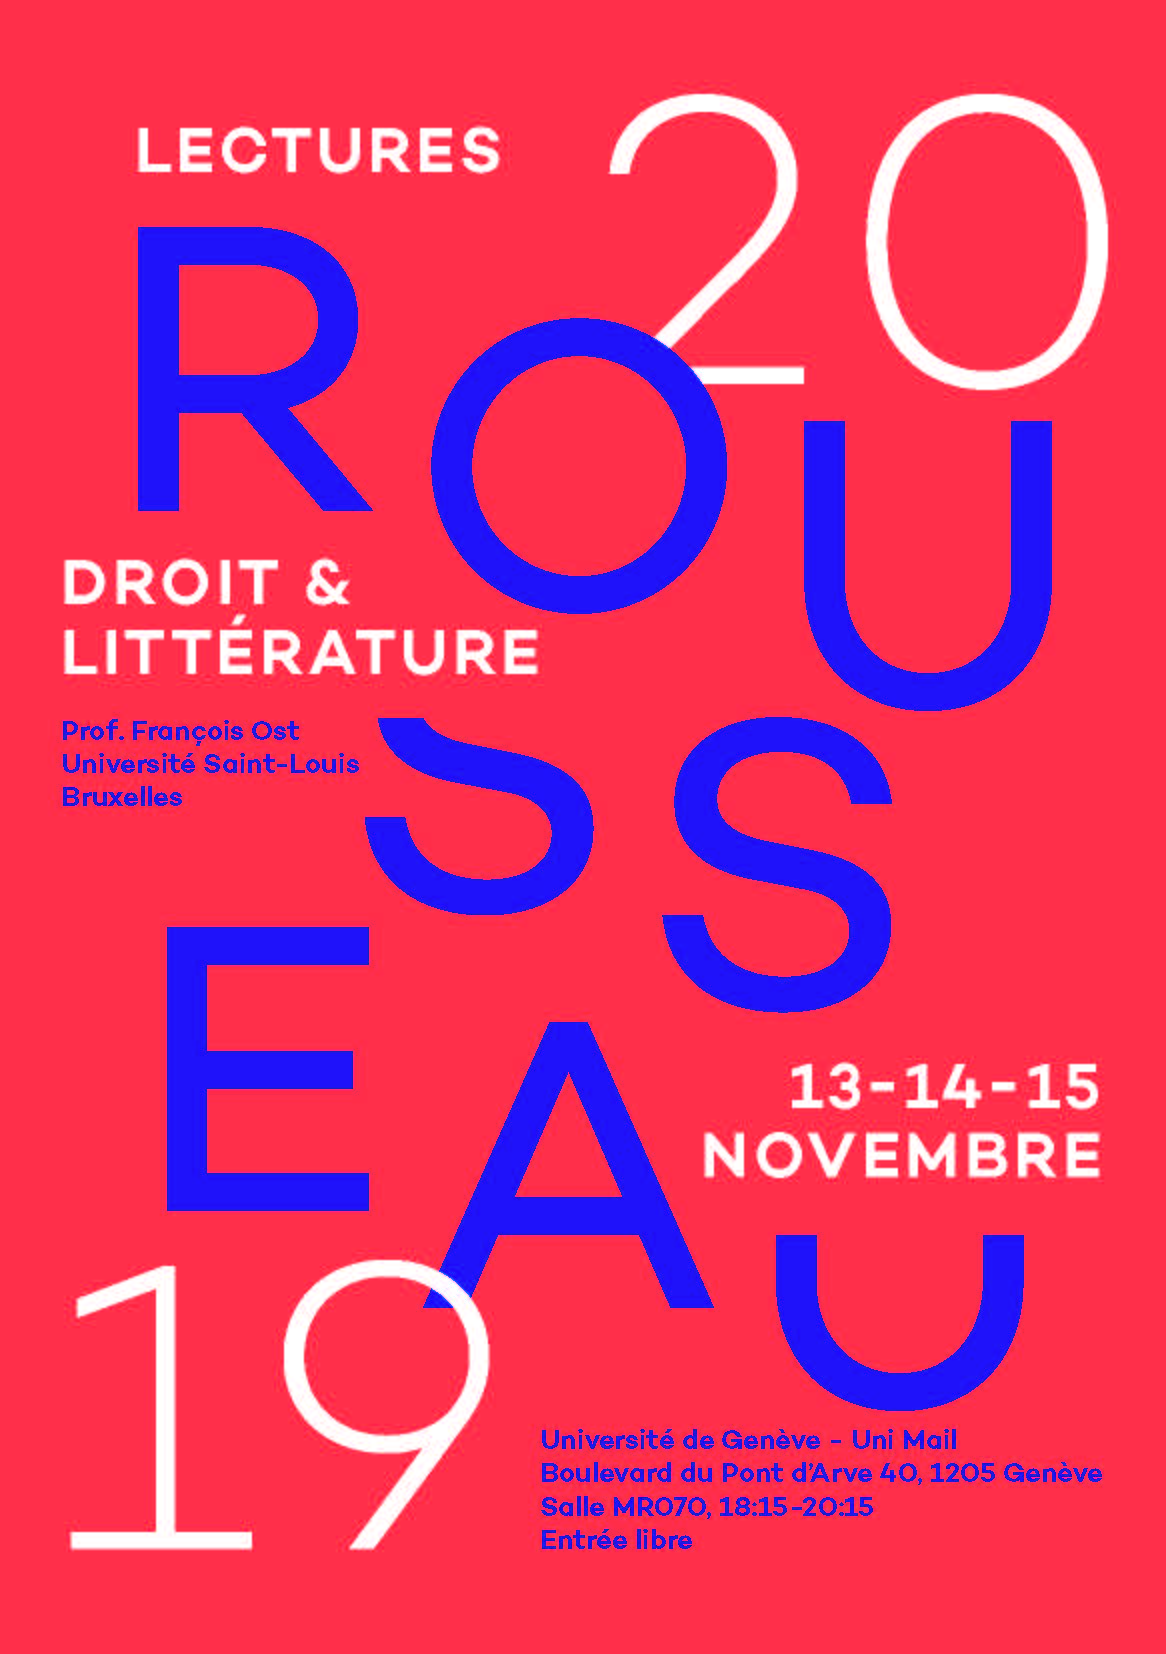 UNIL_Rousseau Lectures 2019